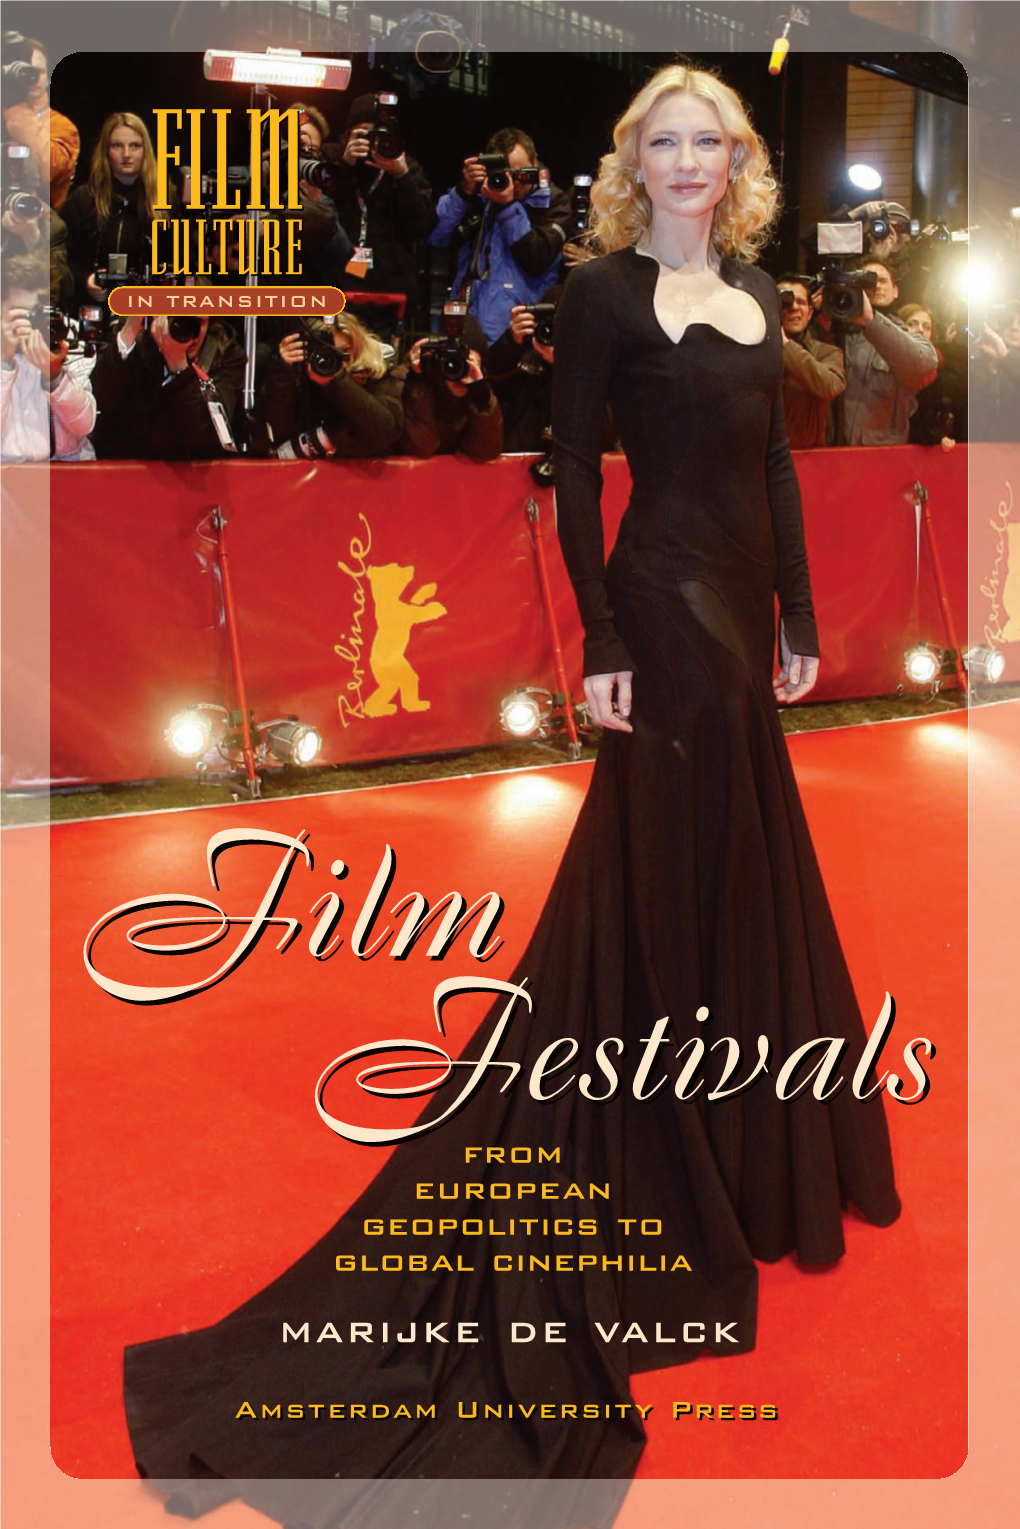 Film Festivals 07-11-2007 15:19 Pagina 1